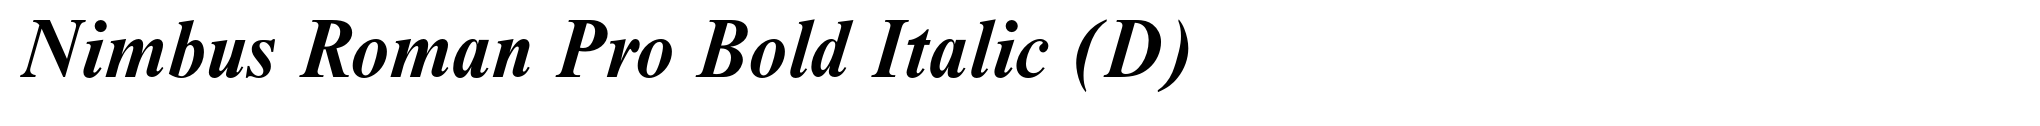 Nimbus Roman Pro Bold Italic (D) image